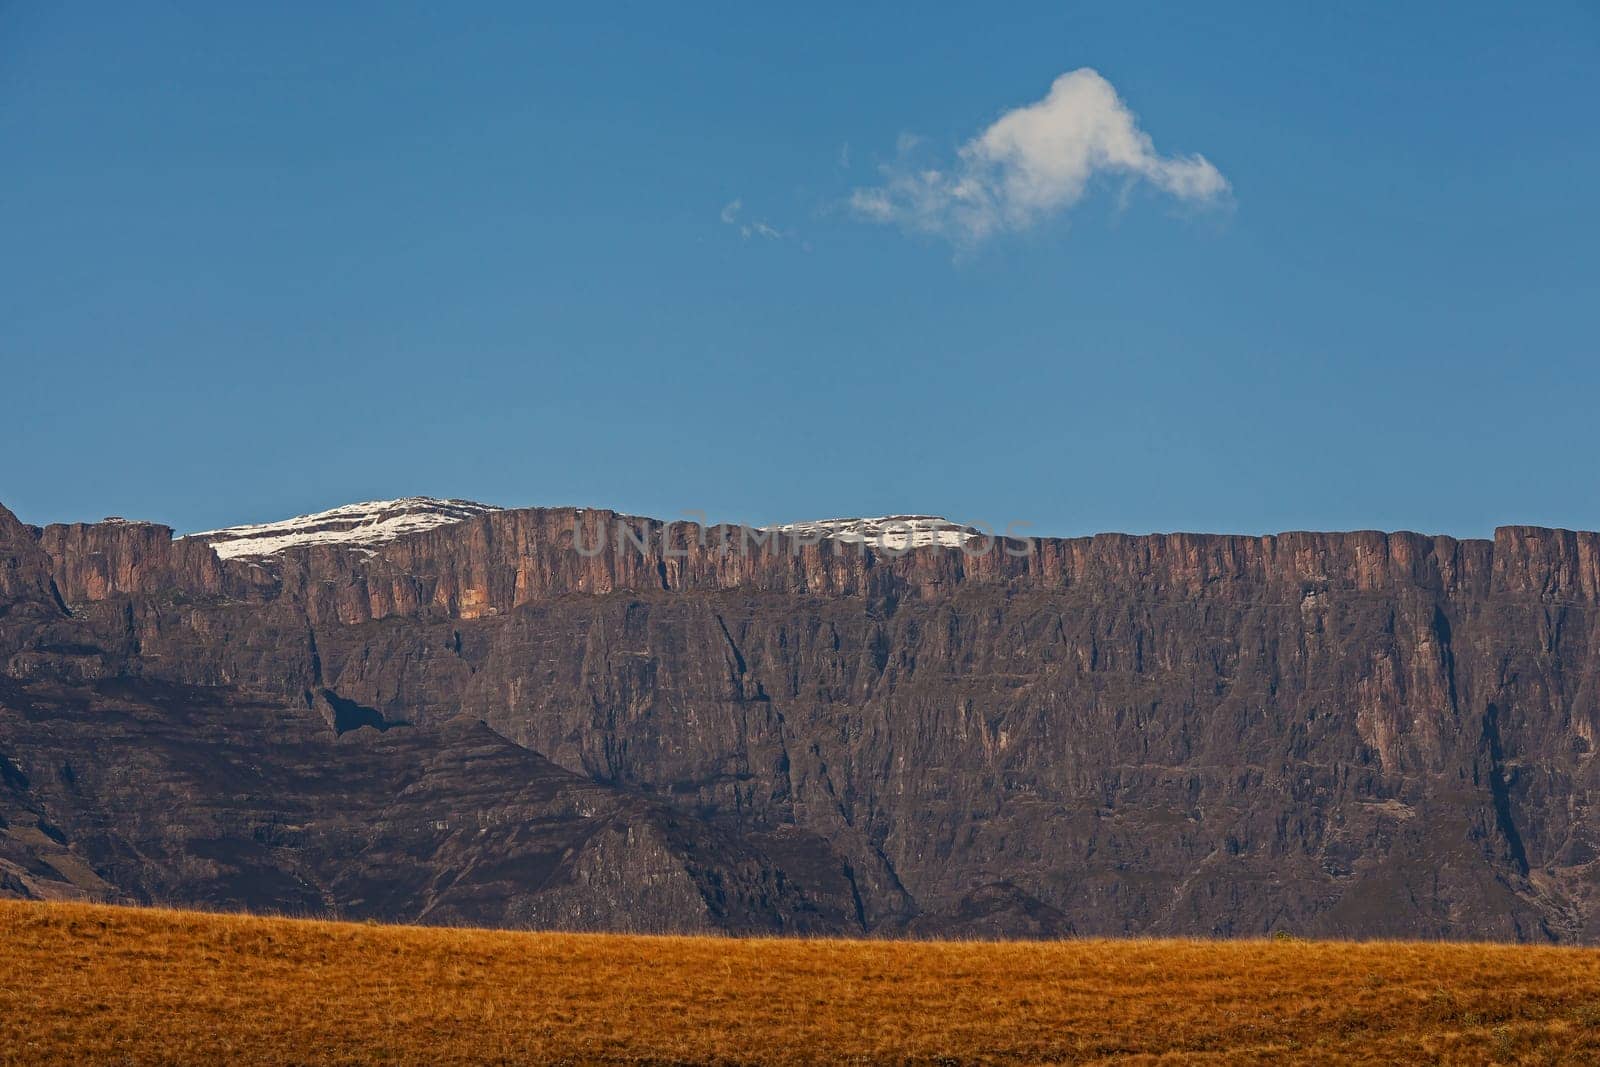 Drakensberg Mountain scene 15599 by kobus_peche